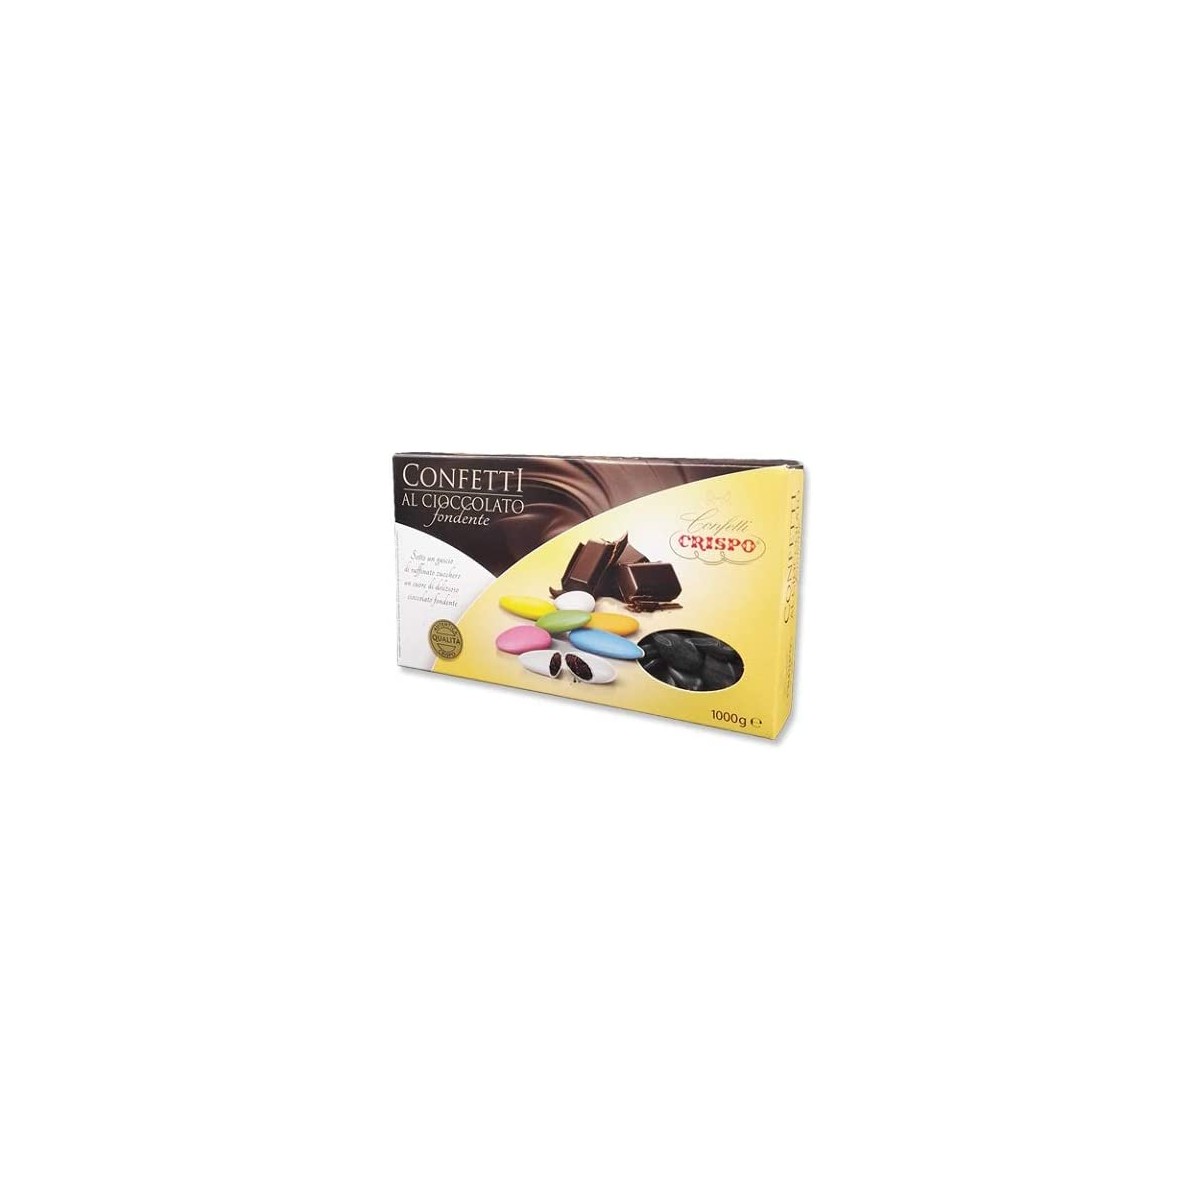 Confetti al cioccolato fondete, neri, Crispo, da 1 kg